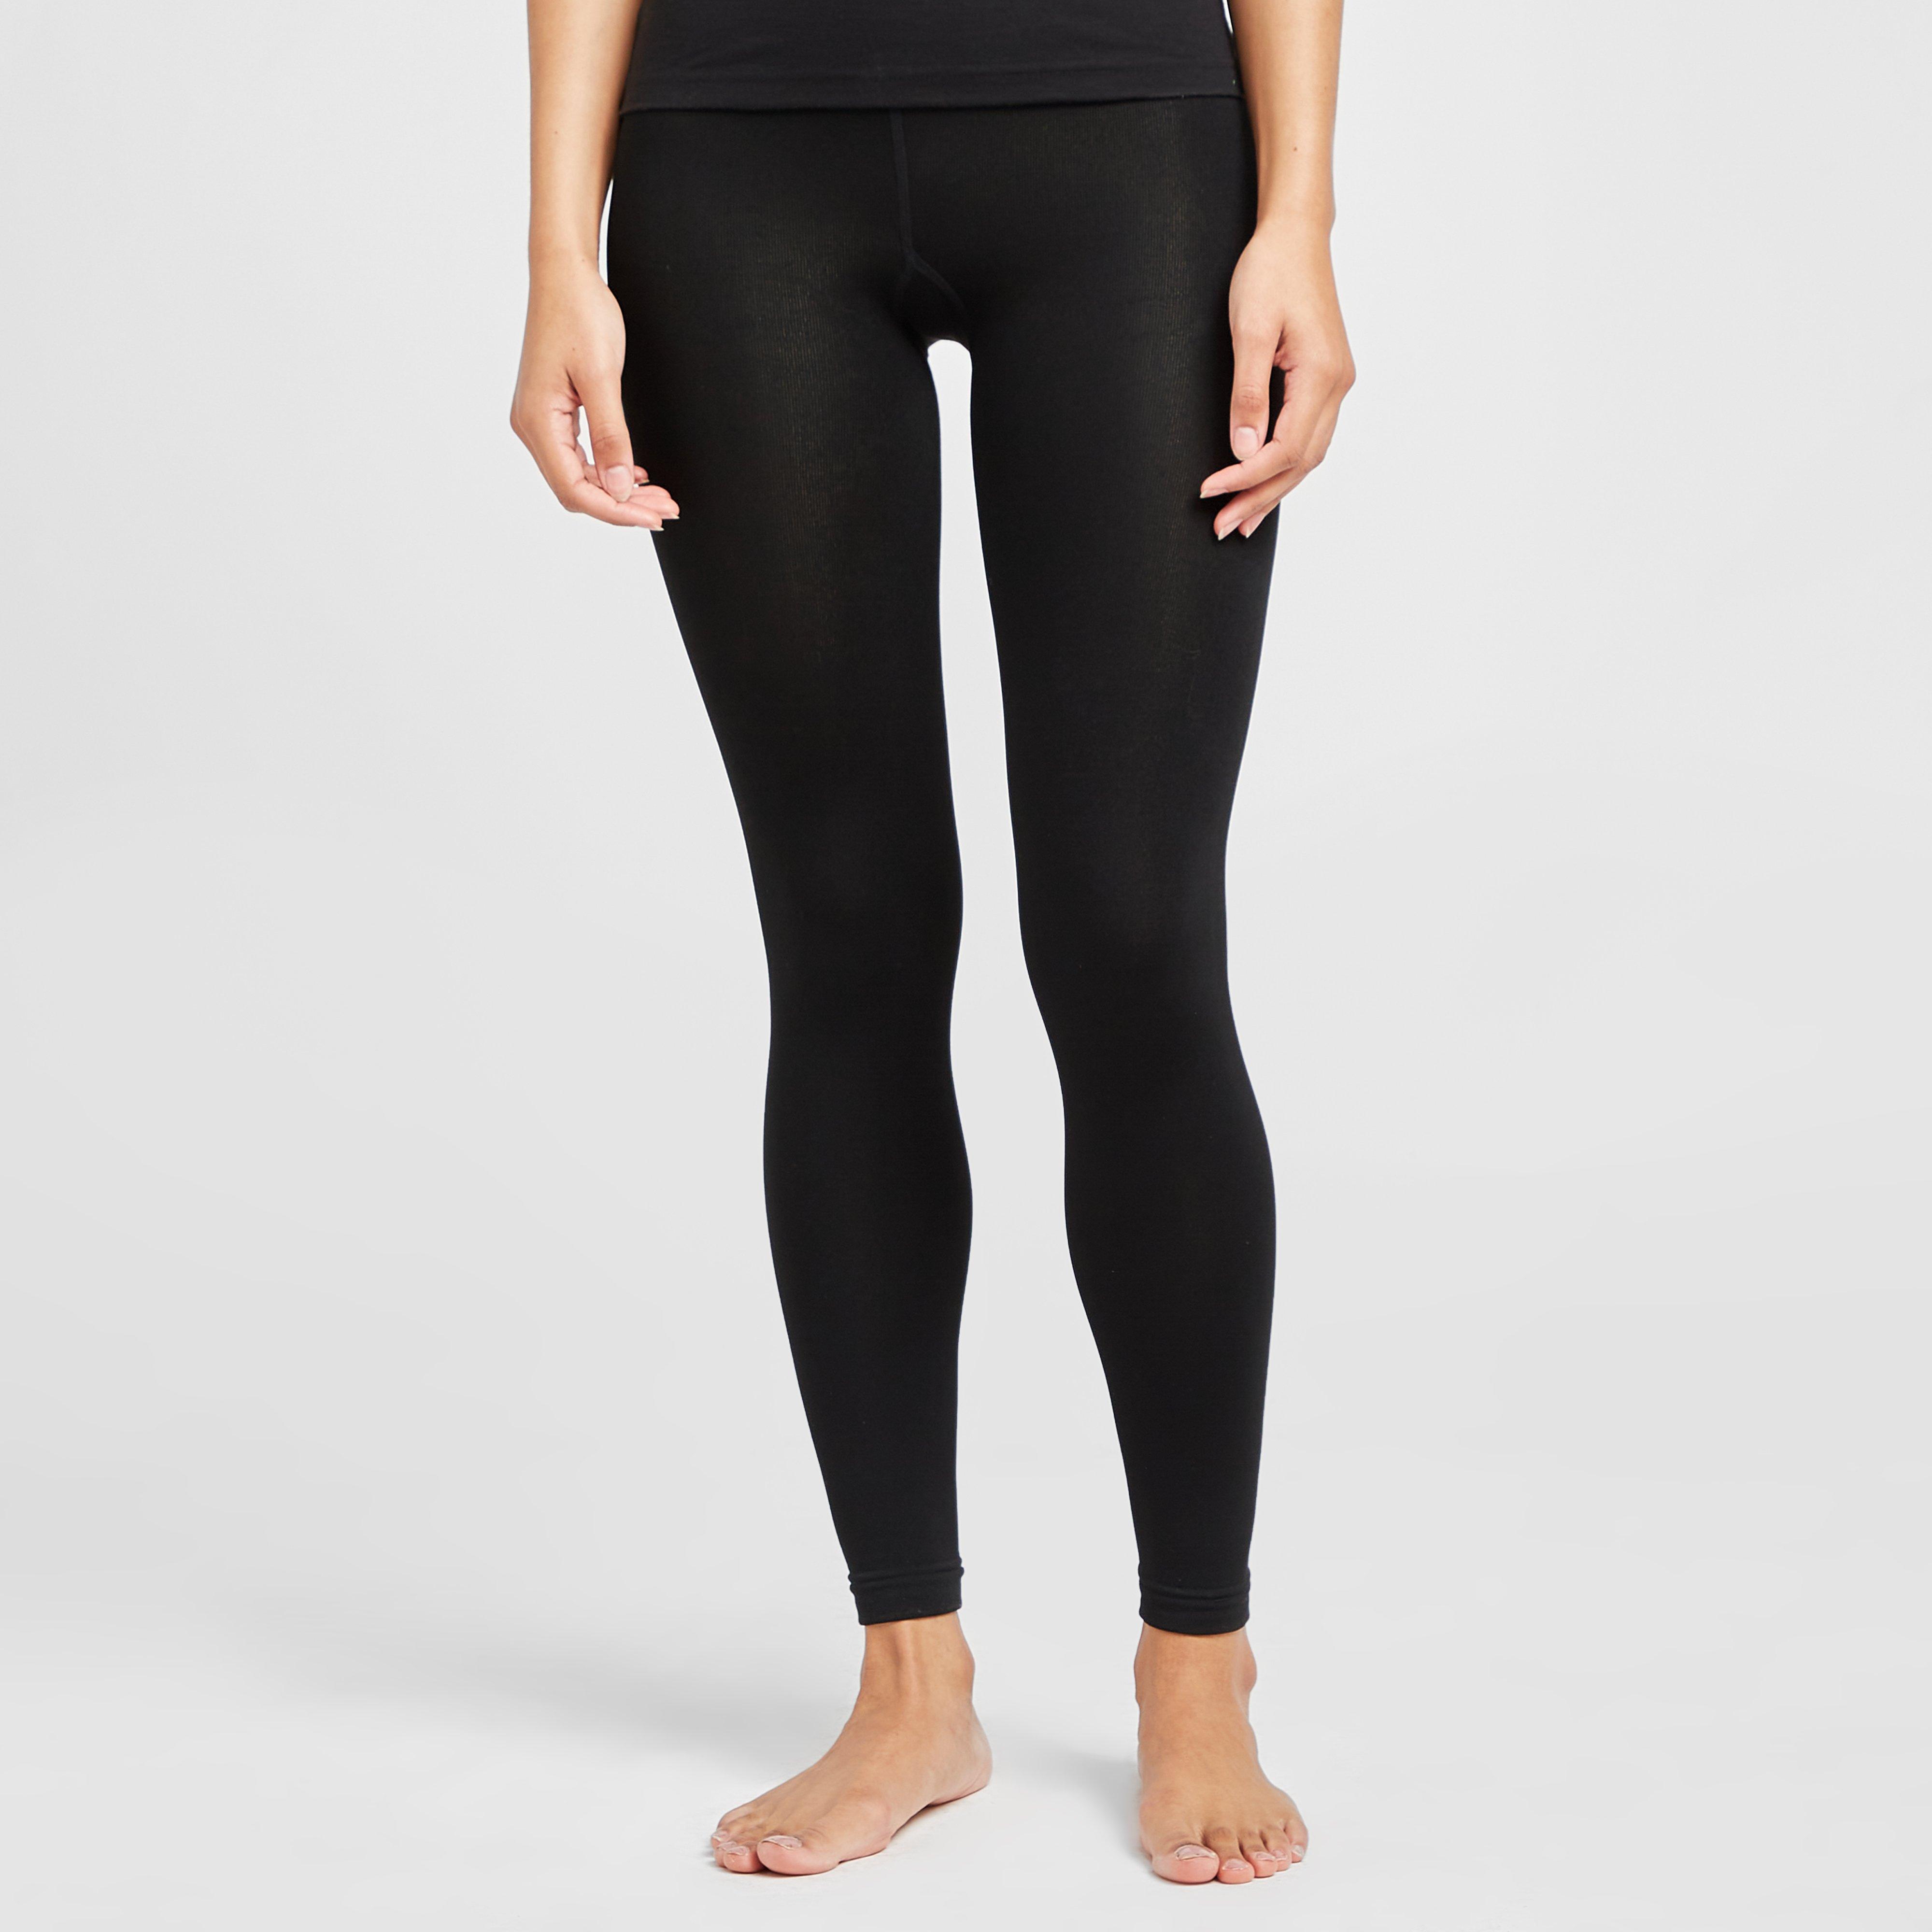 Heat Holders Womens Thermal Leggings - Black/leggings  Black/leggings